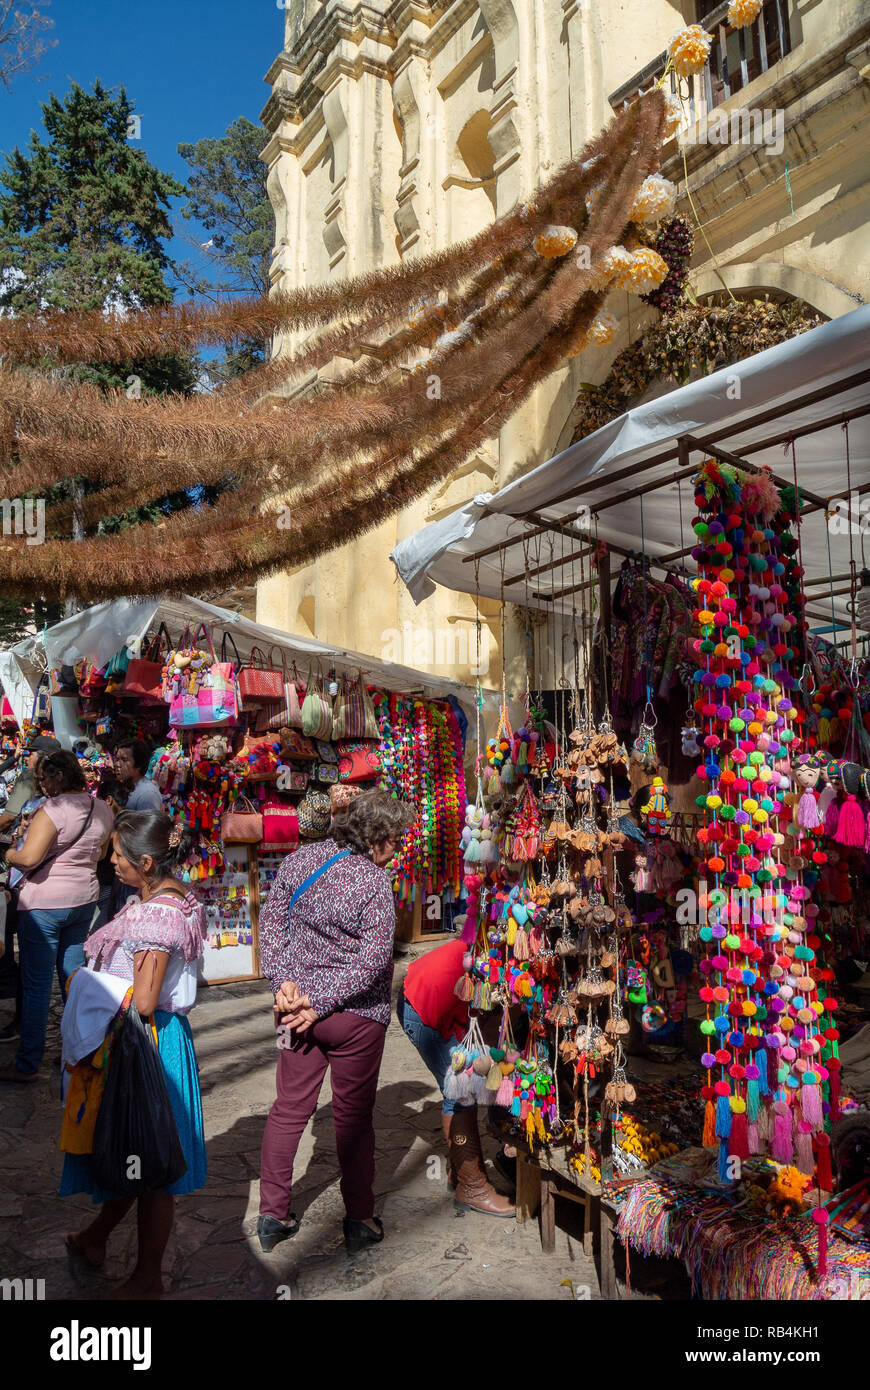 Mercado artesanias at Santo Domingo church, San Cristobal de las Casas, Chiapas, Mexico Stock Photo